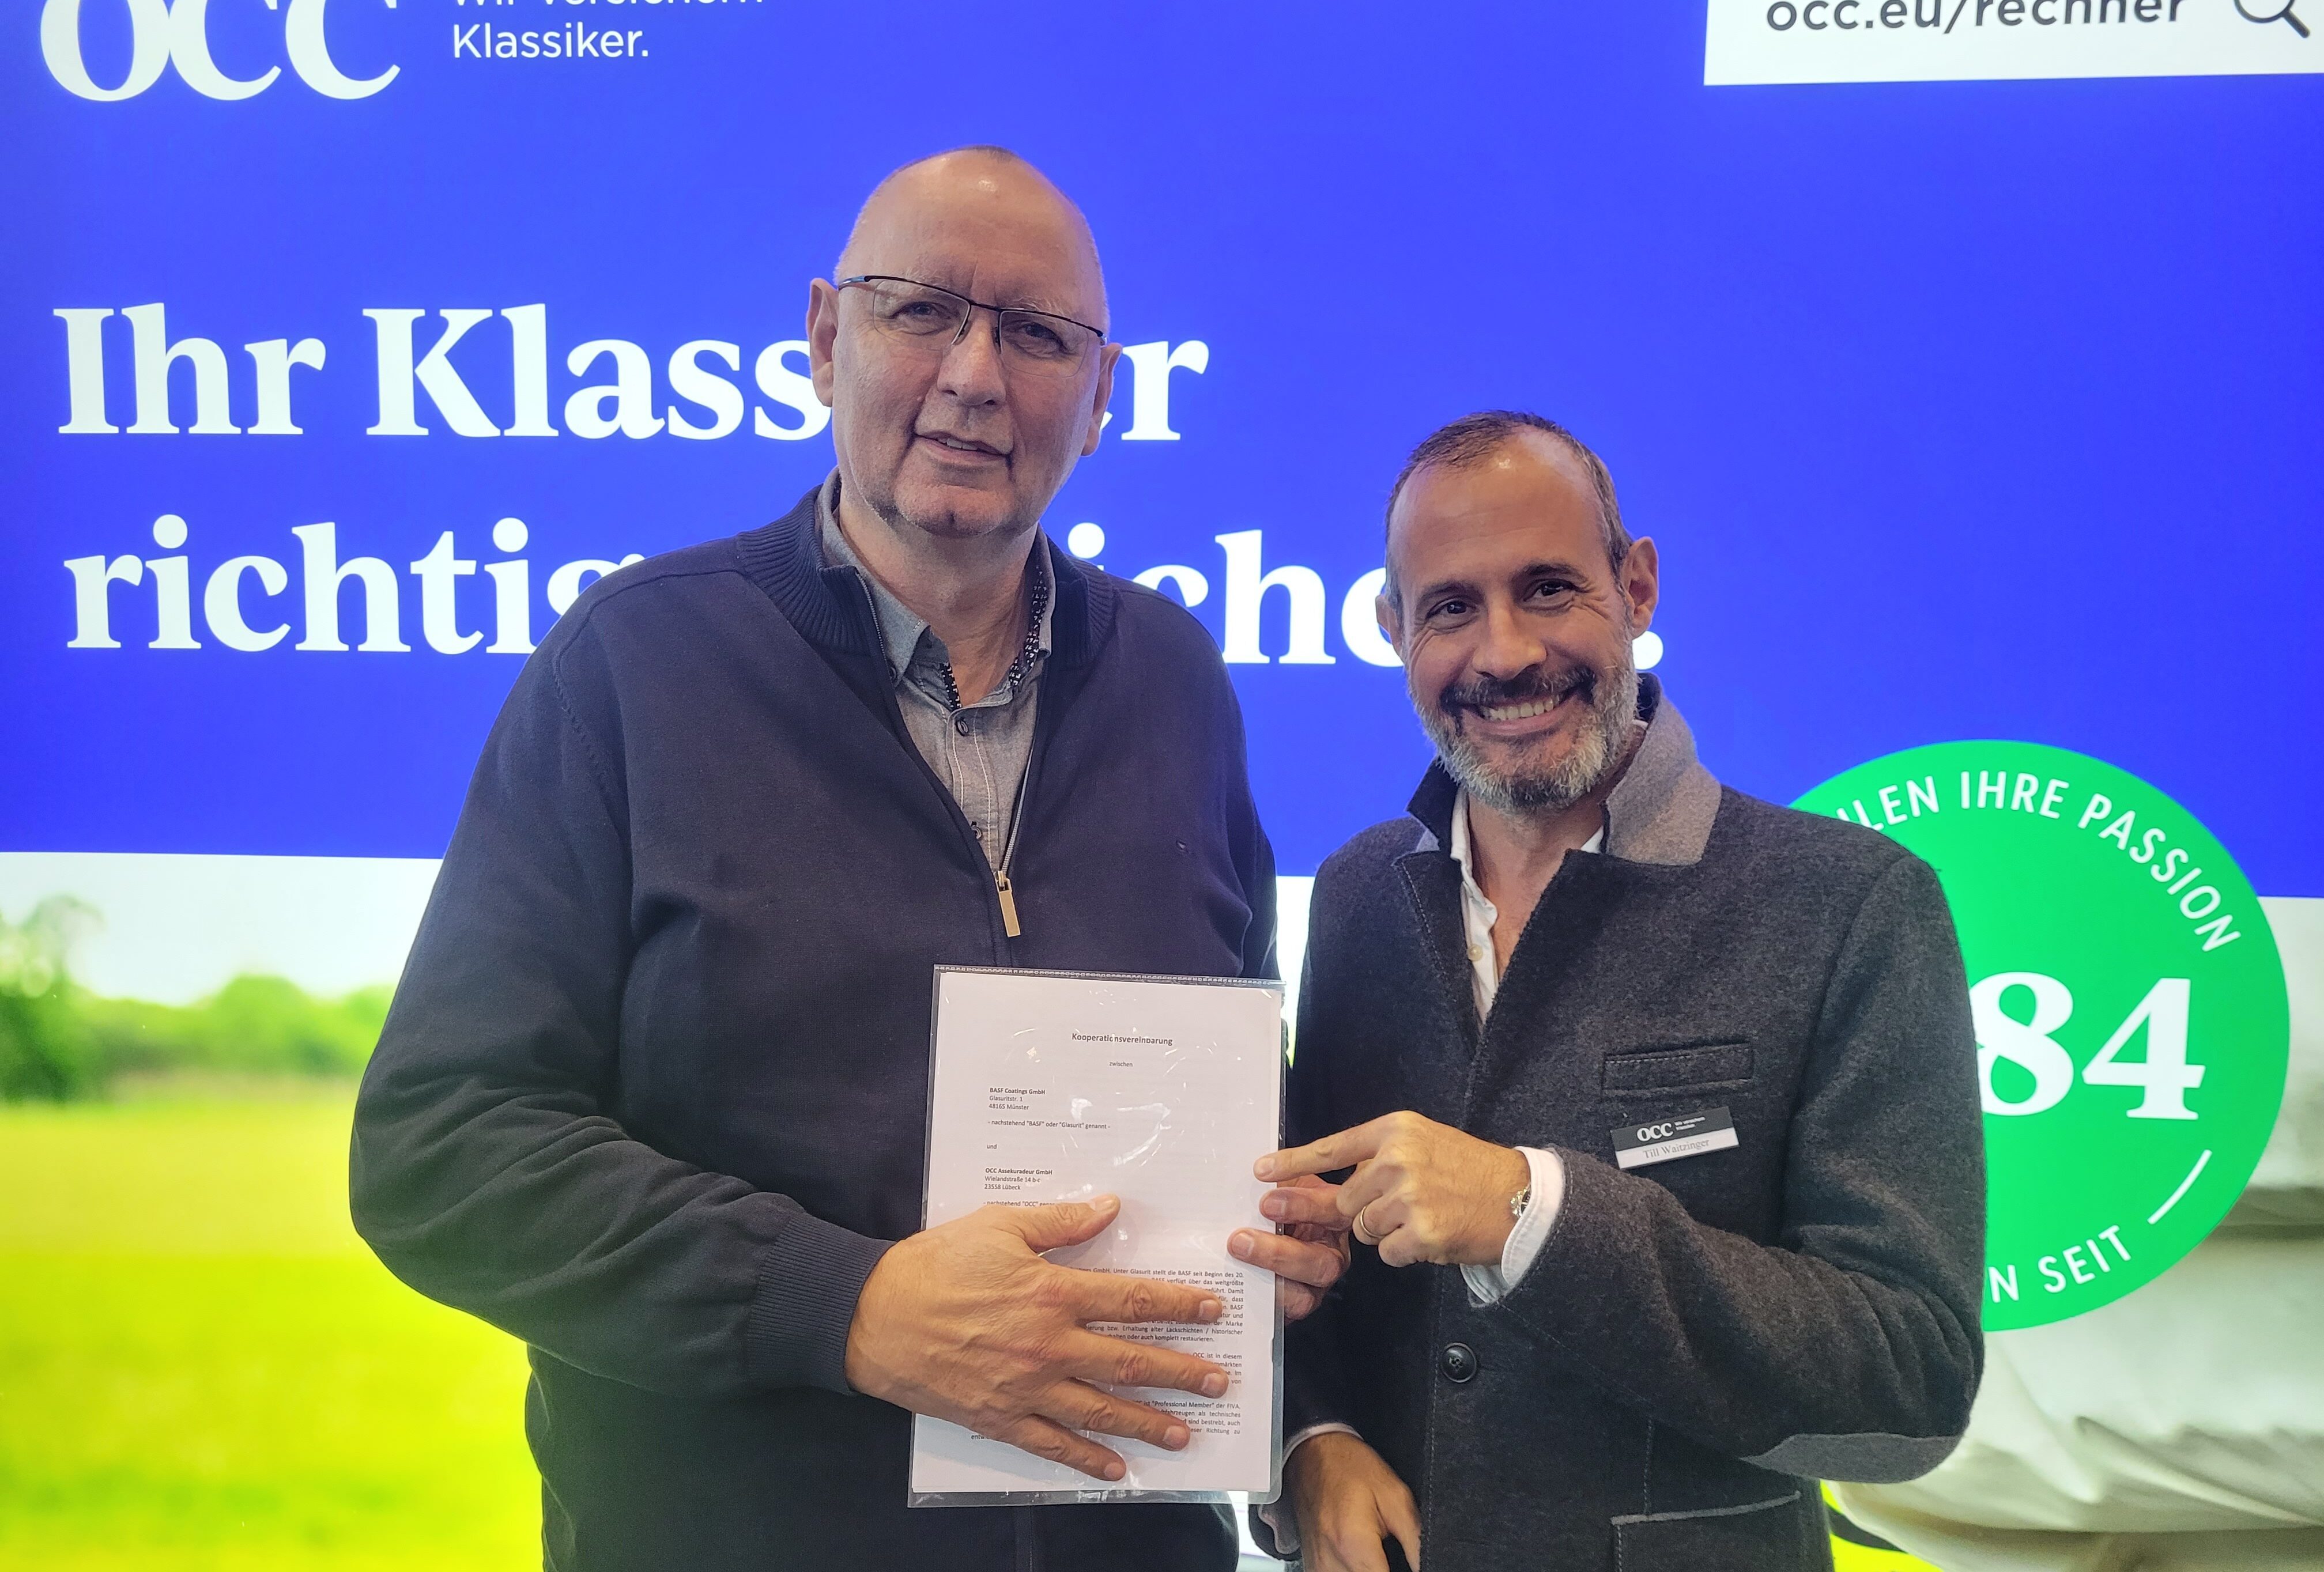 Jürgen Book Leiter Classic Cars BASF und Till Waitzinger Chief Representation Officer bei OCC